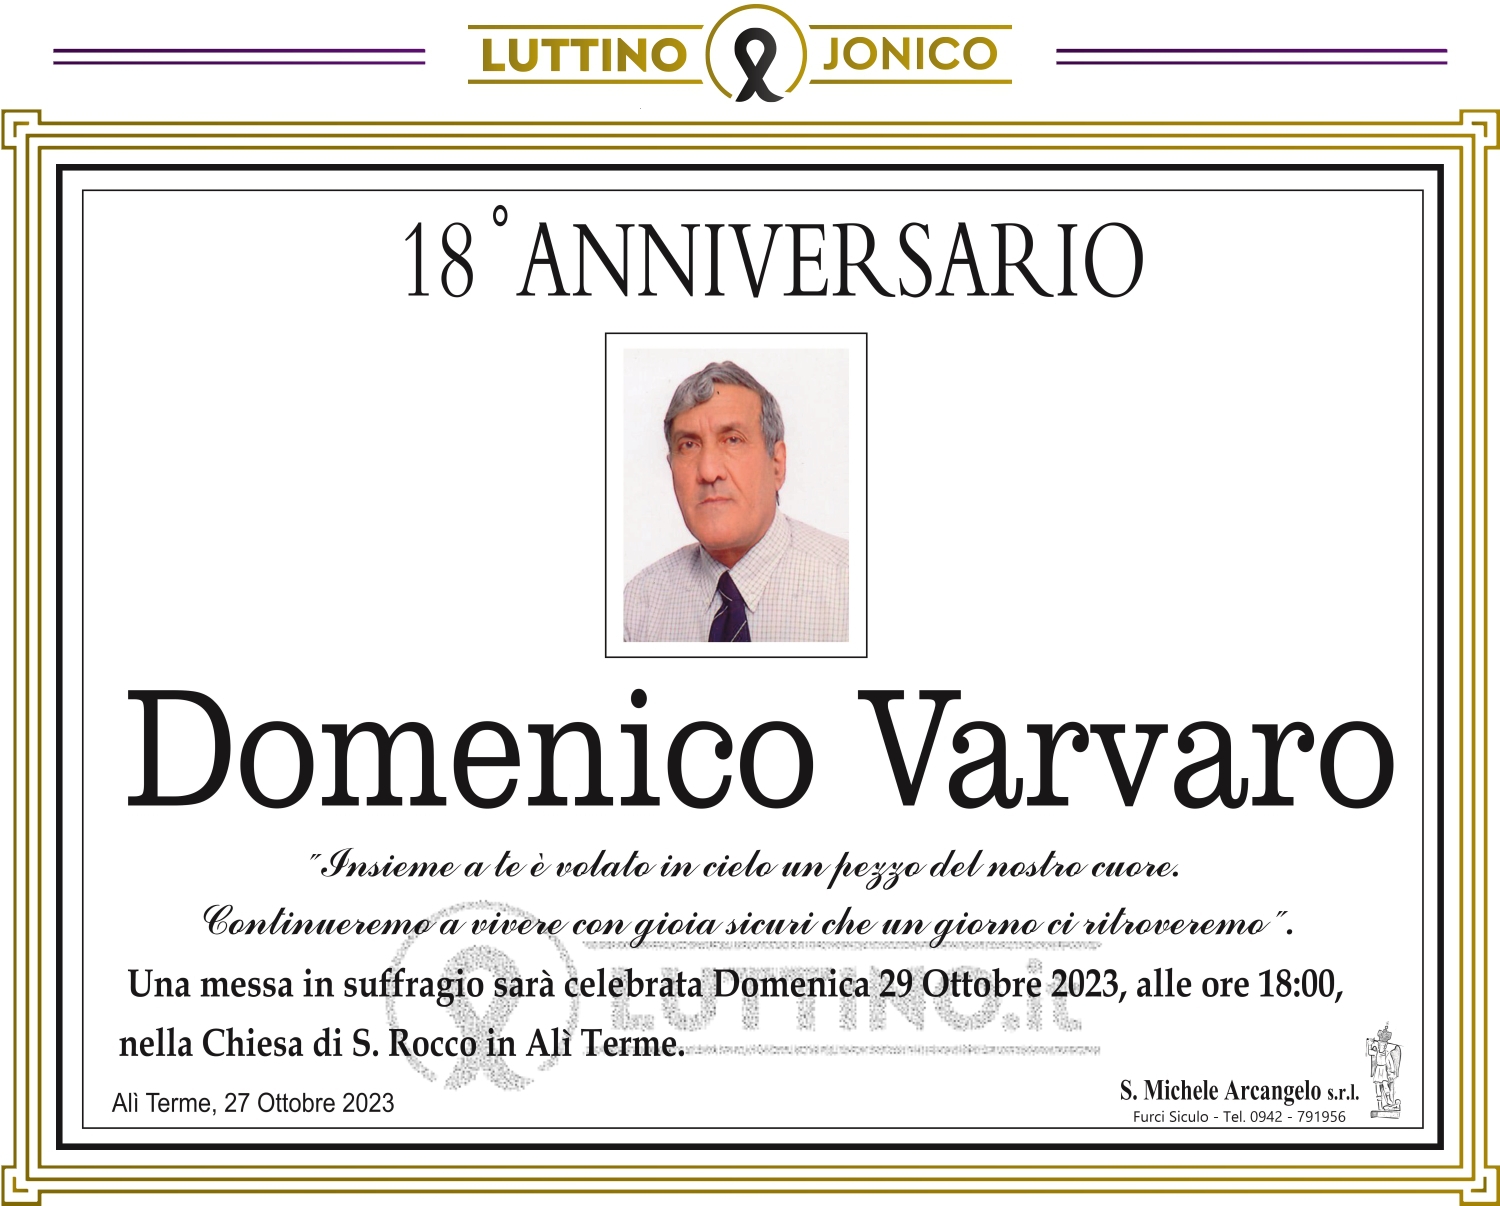 Domenico Varvaro